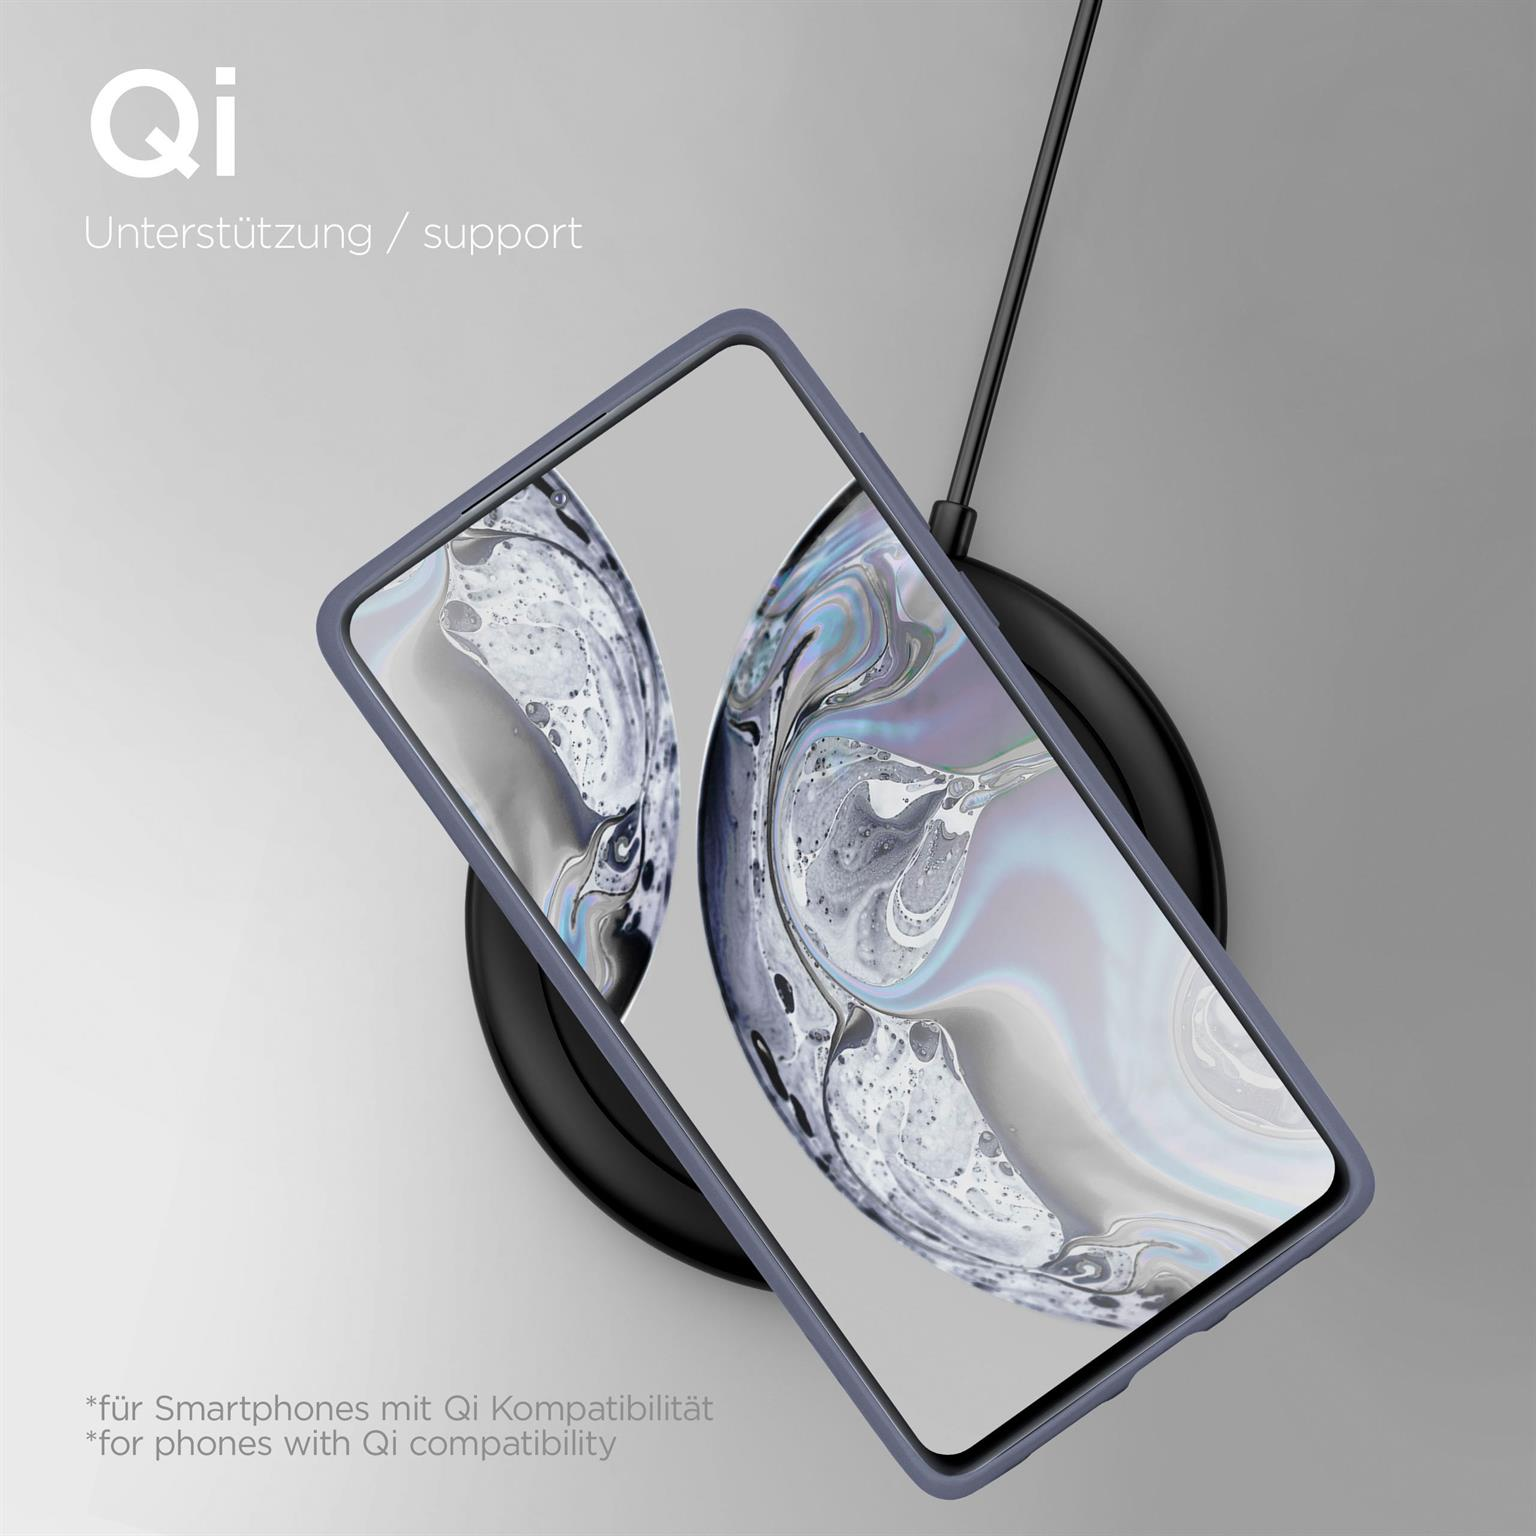 ONEFLOW Soft Case, Backcover, S20 Galaxy 5G, FE Lavendelgrau Samsung